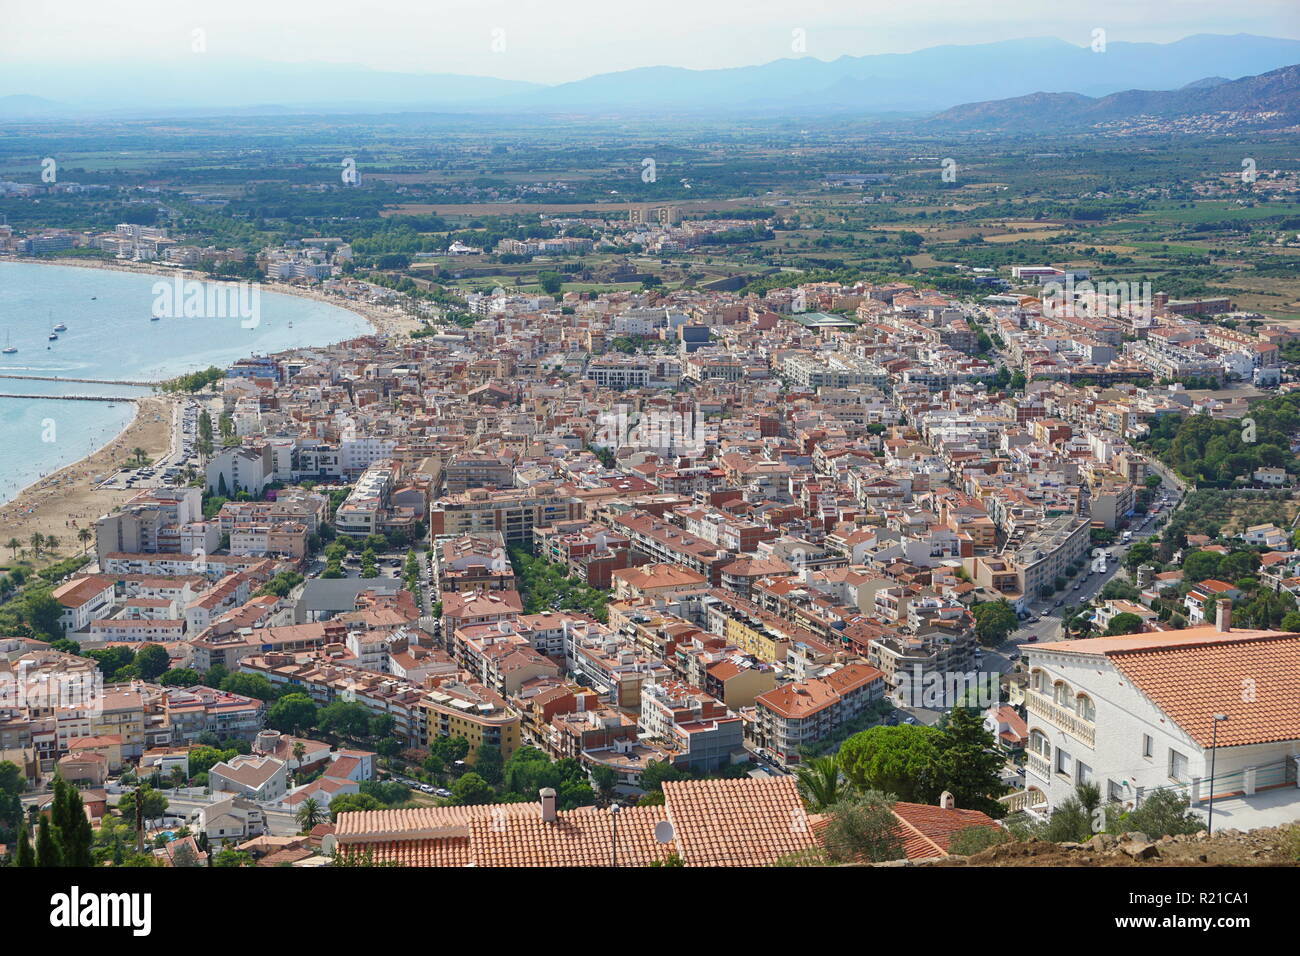 Vista aerea della città balneare di Roses sulla riva del mare Mediterraneo, spagna Costa Brava, Girona, Catalogna, Alt Emporda Foto Stock